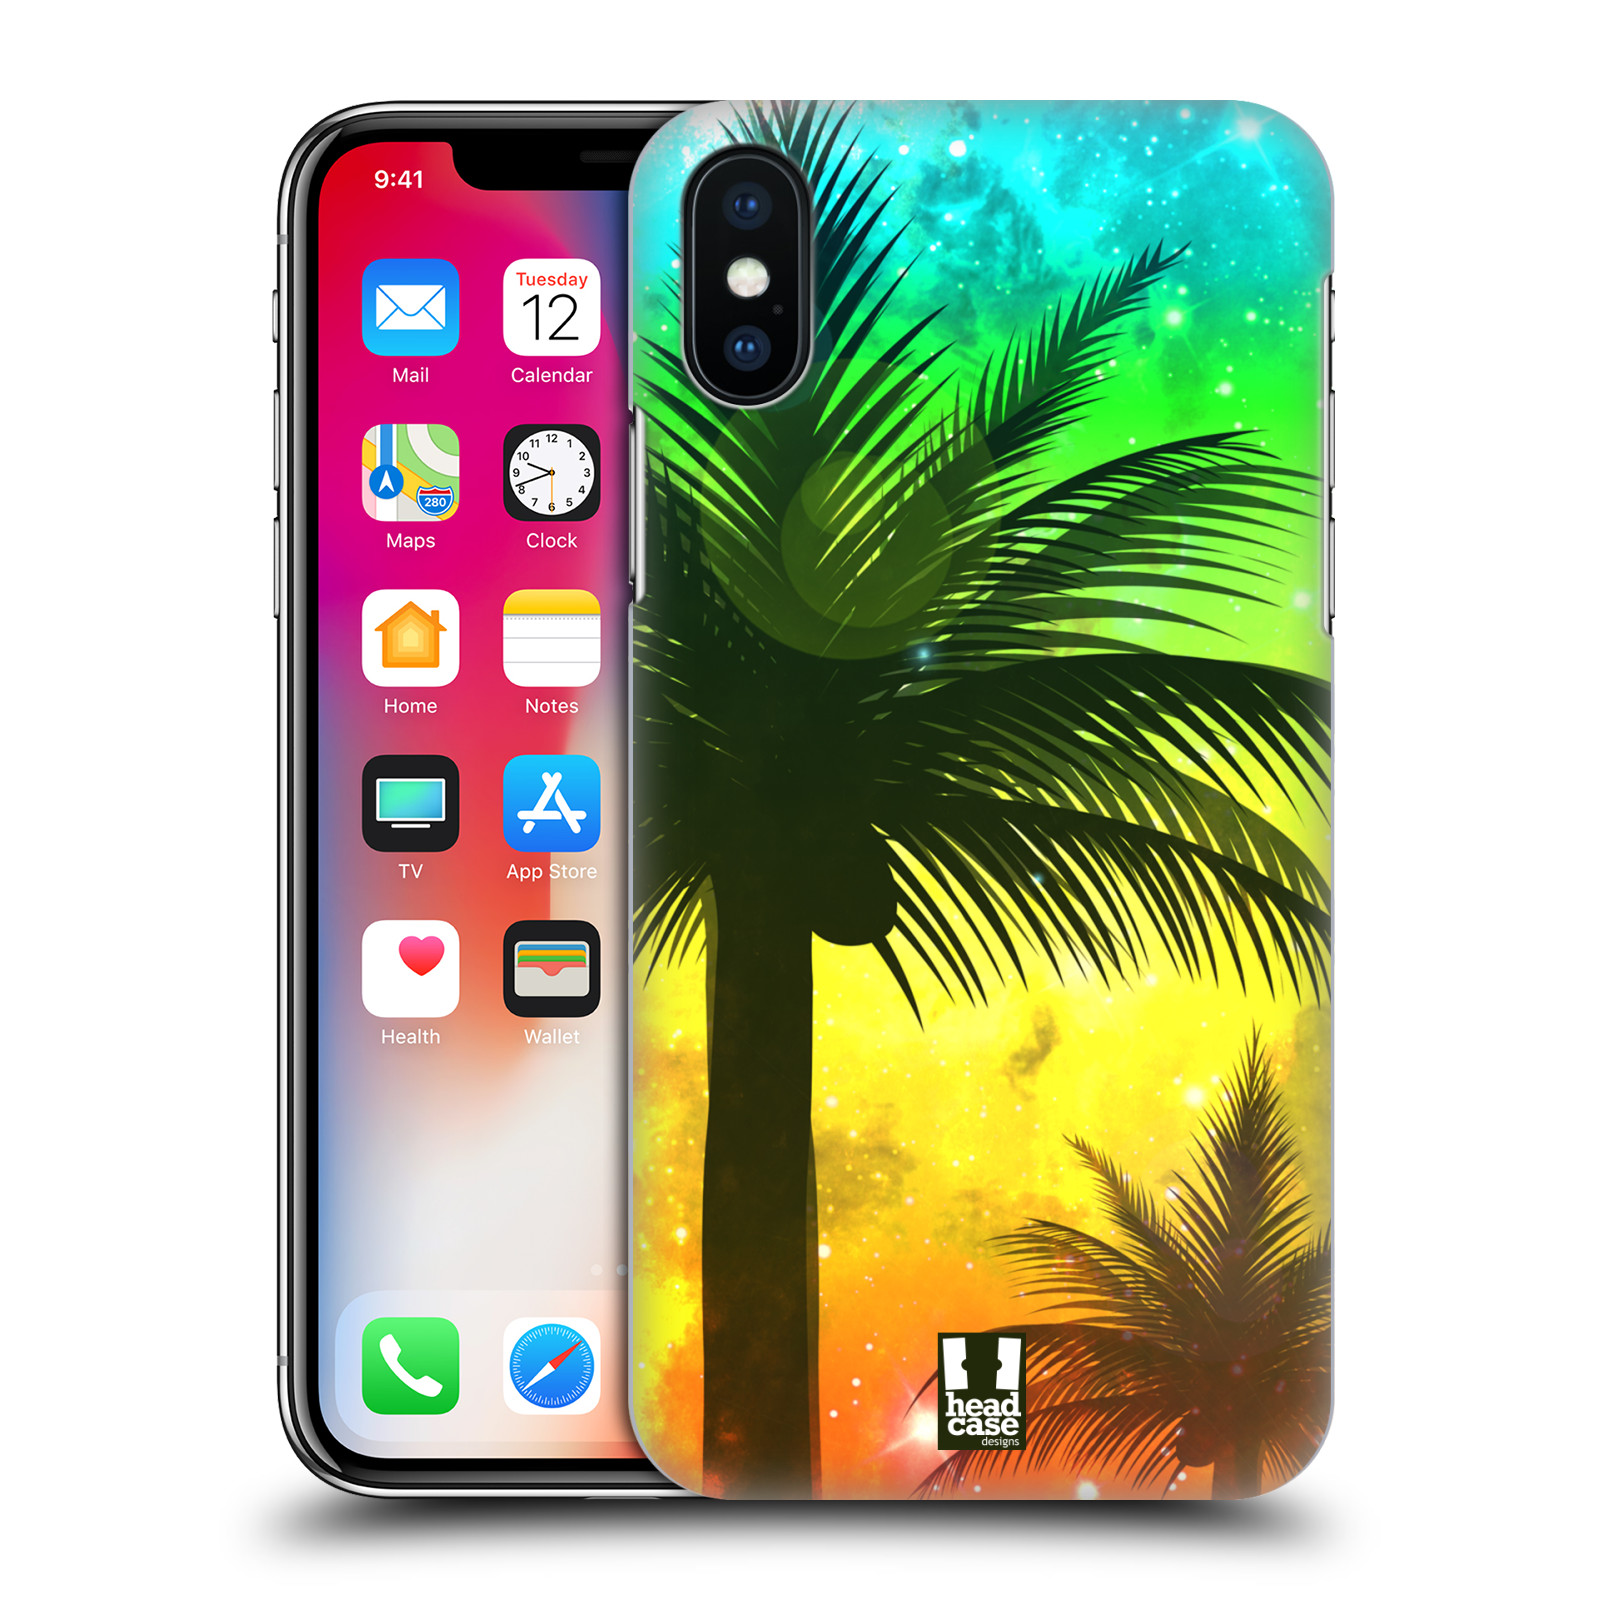 HEAD CASE plastový obal na mobil Apple Iphone X / XS vzor Kreslený motiv silueta moře a palmy ZELENÁ A ORANŽOVÁ